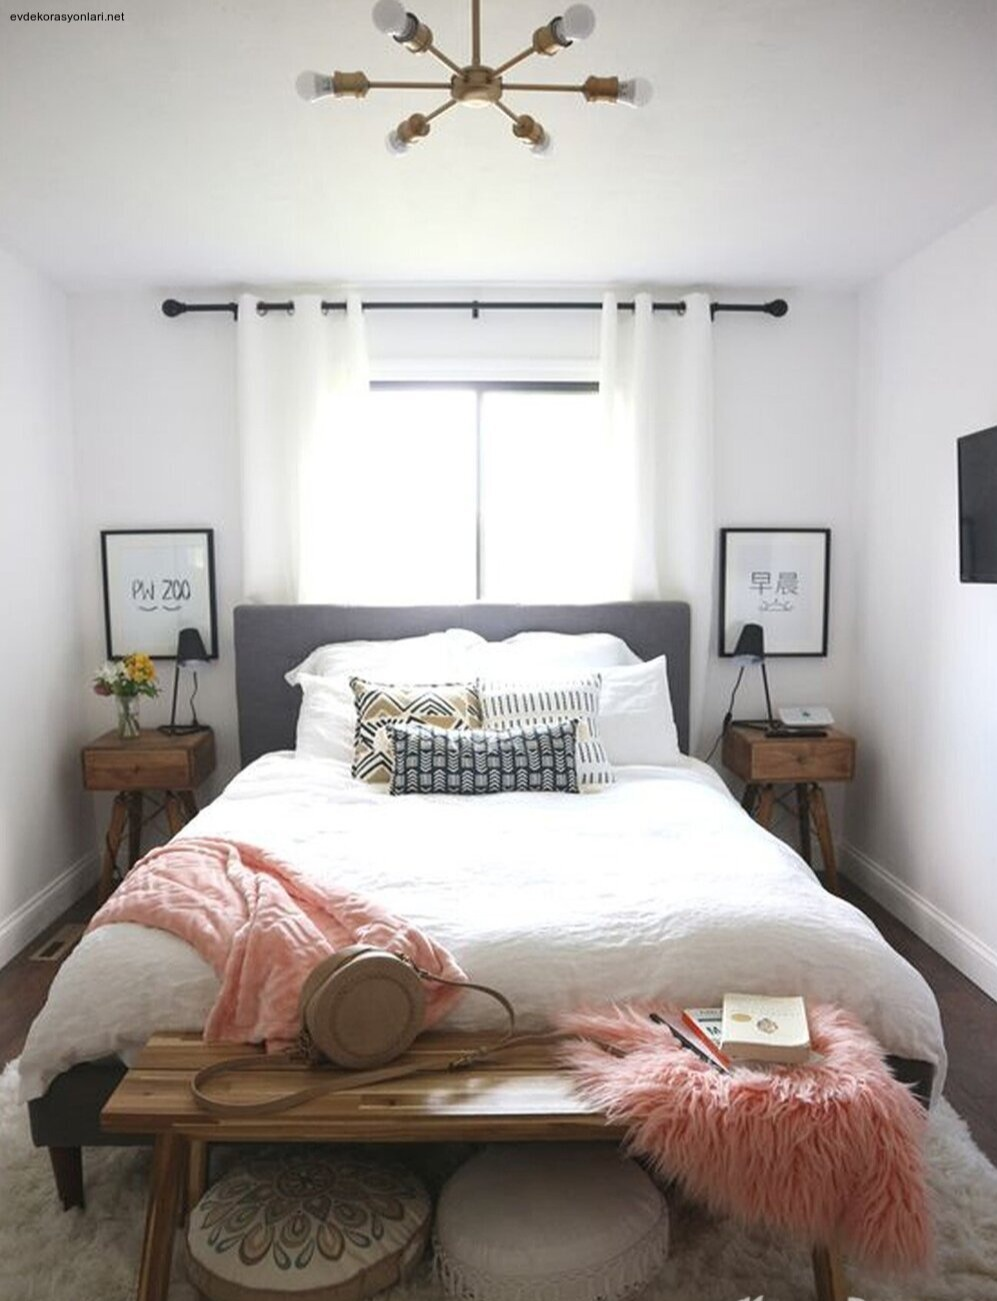 küçük yatak odası dekorasyon önerileri